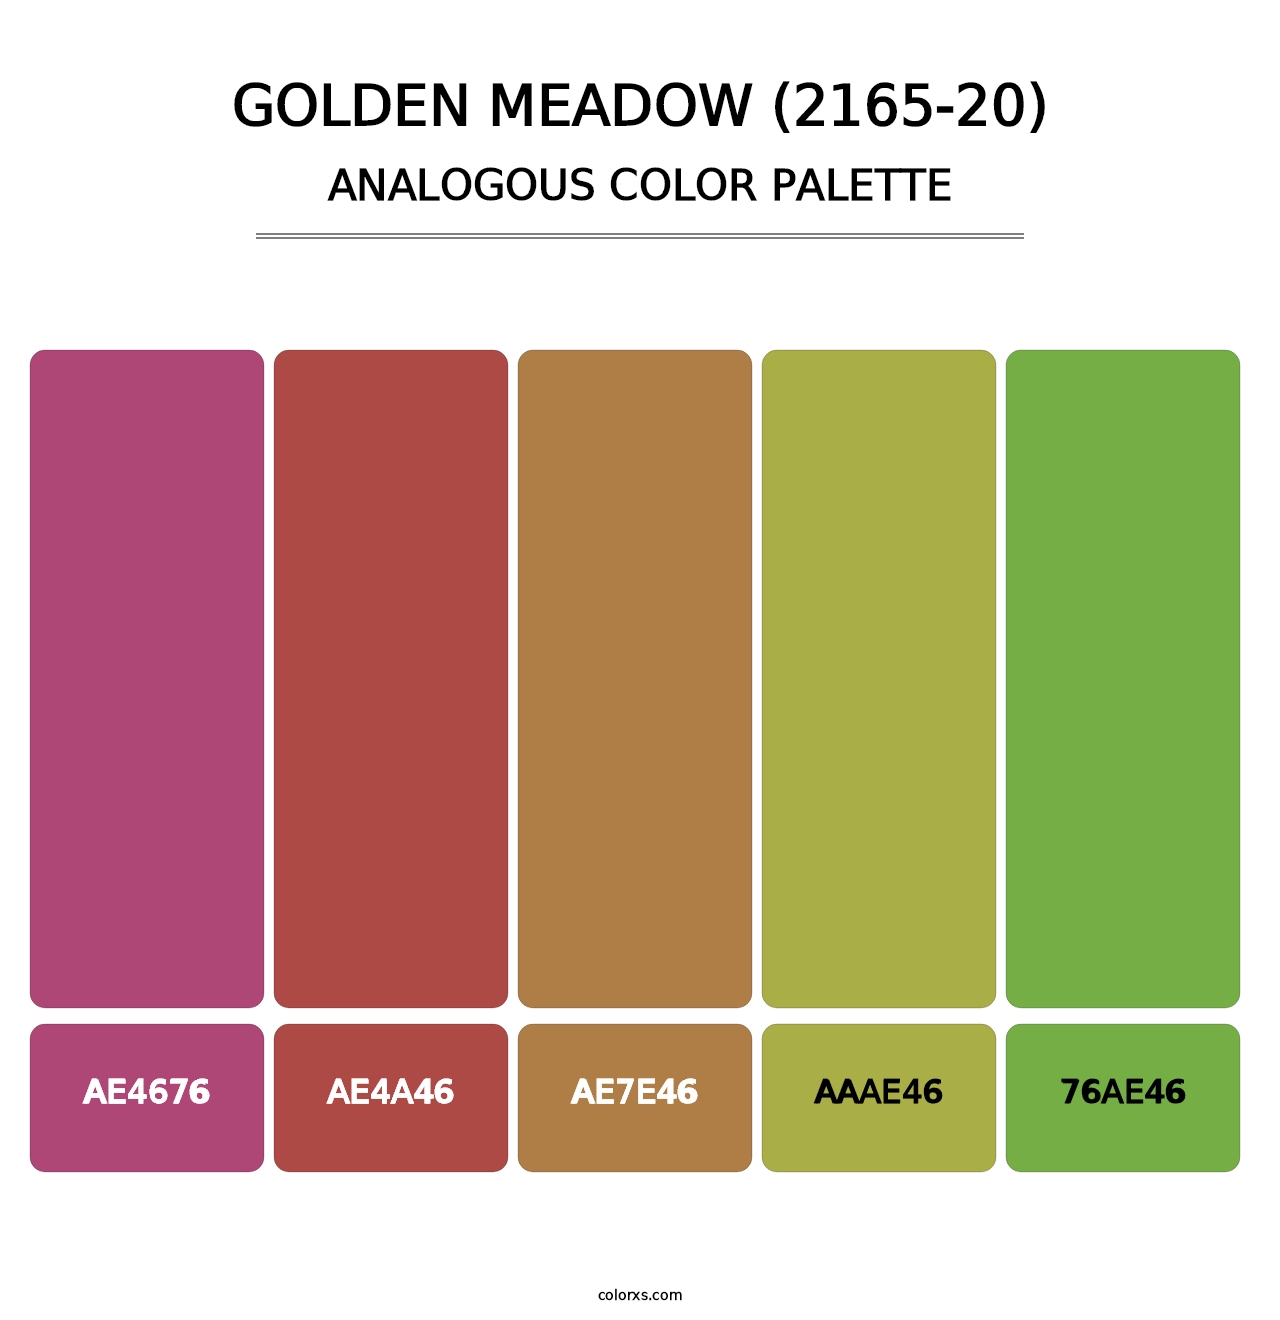 Golden Meadow (2165-20) - Analogous Color Palette